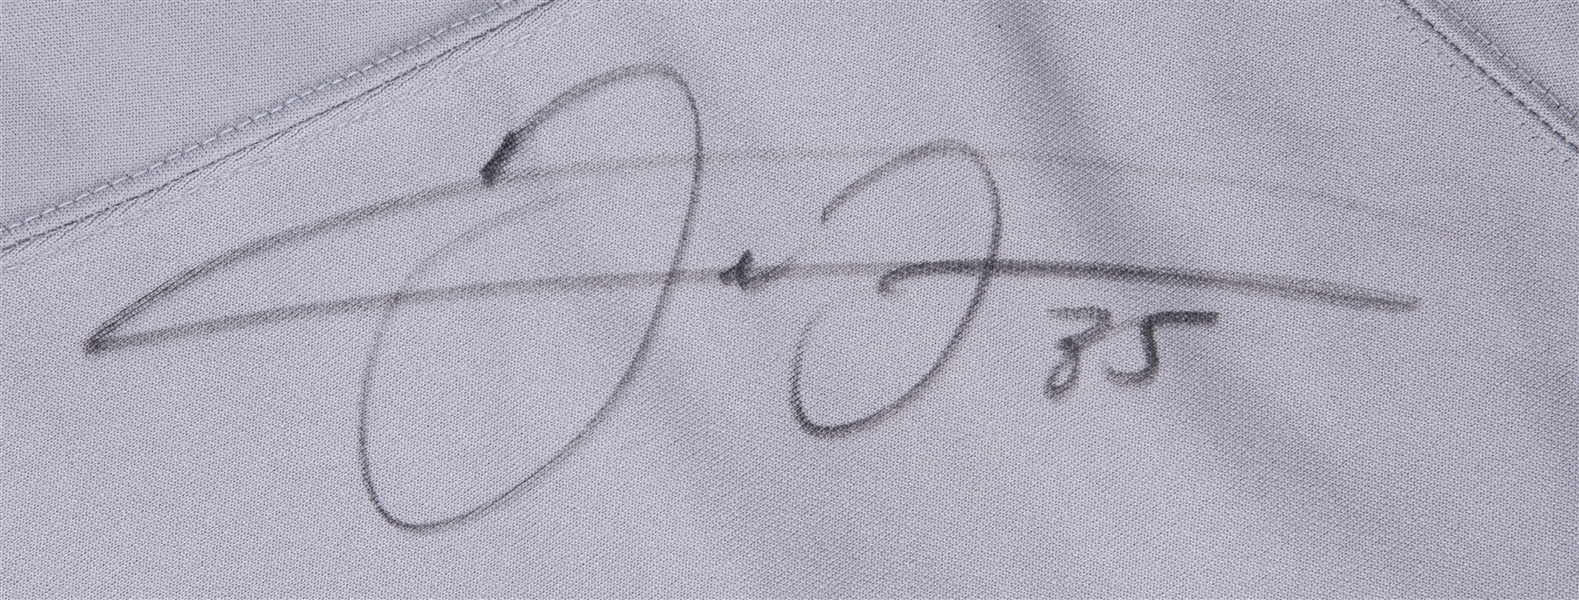 Frank Thomas Autographed Signed Chicago White Sox 16X20 Photo Jsa Coa